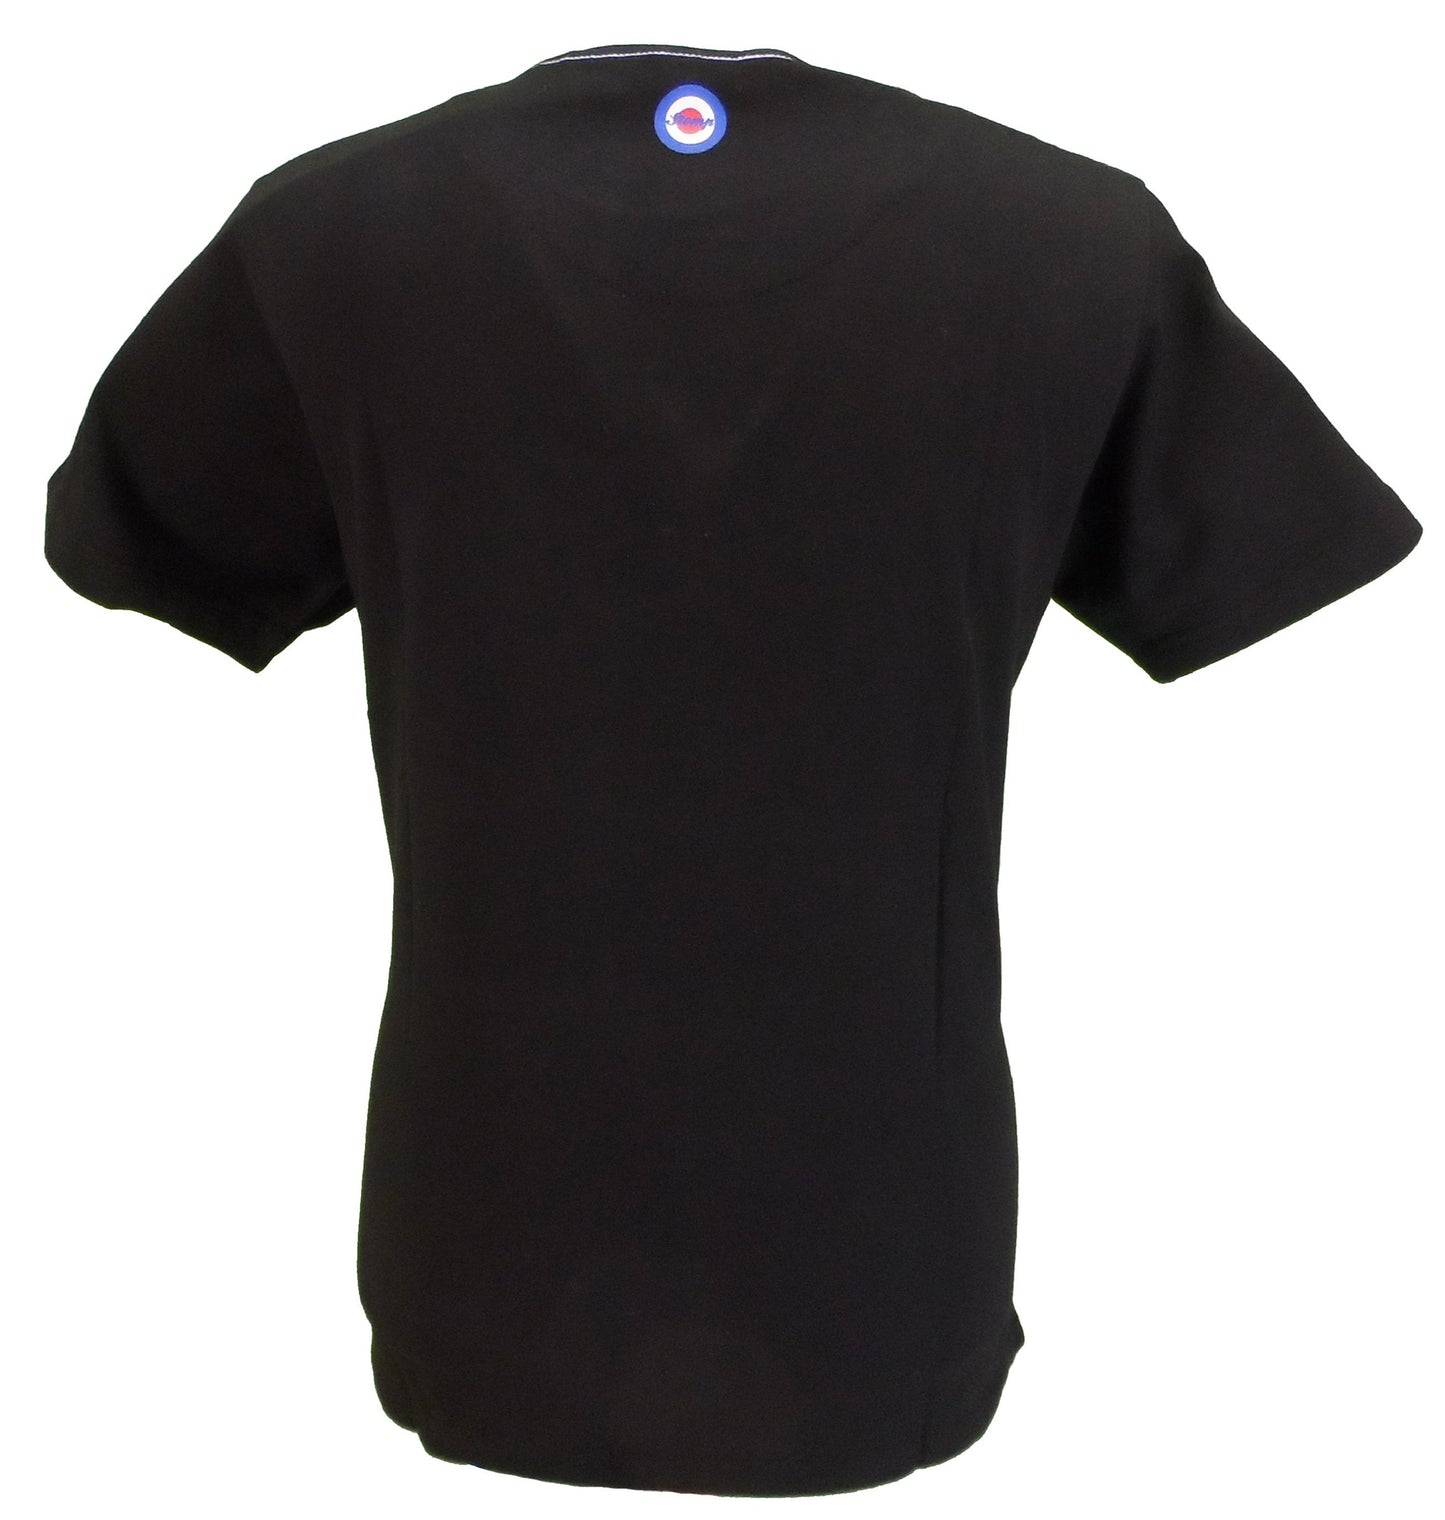 تي شيرت Stomp Clothing أسود بقبضة الروح الشمالية مصنوع من القطن بنسبة 100%